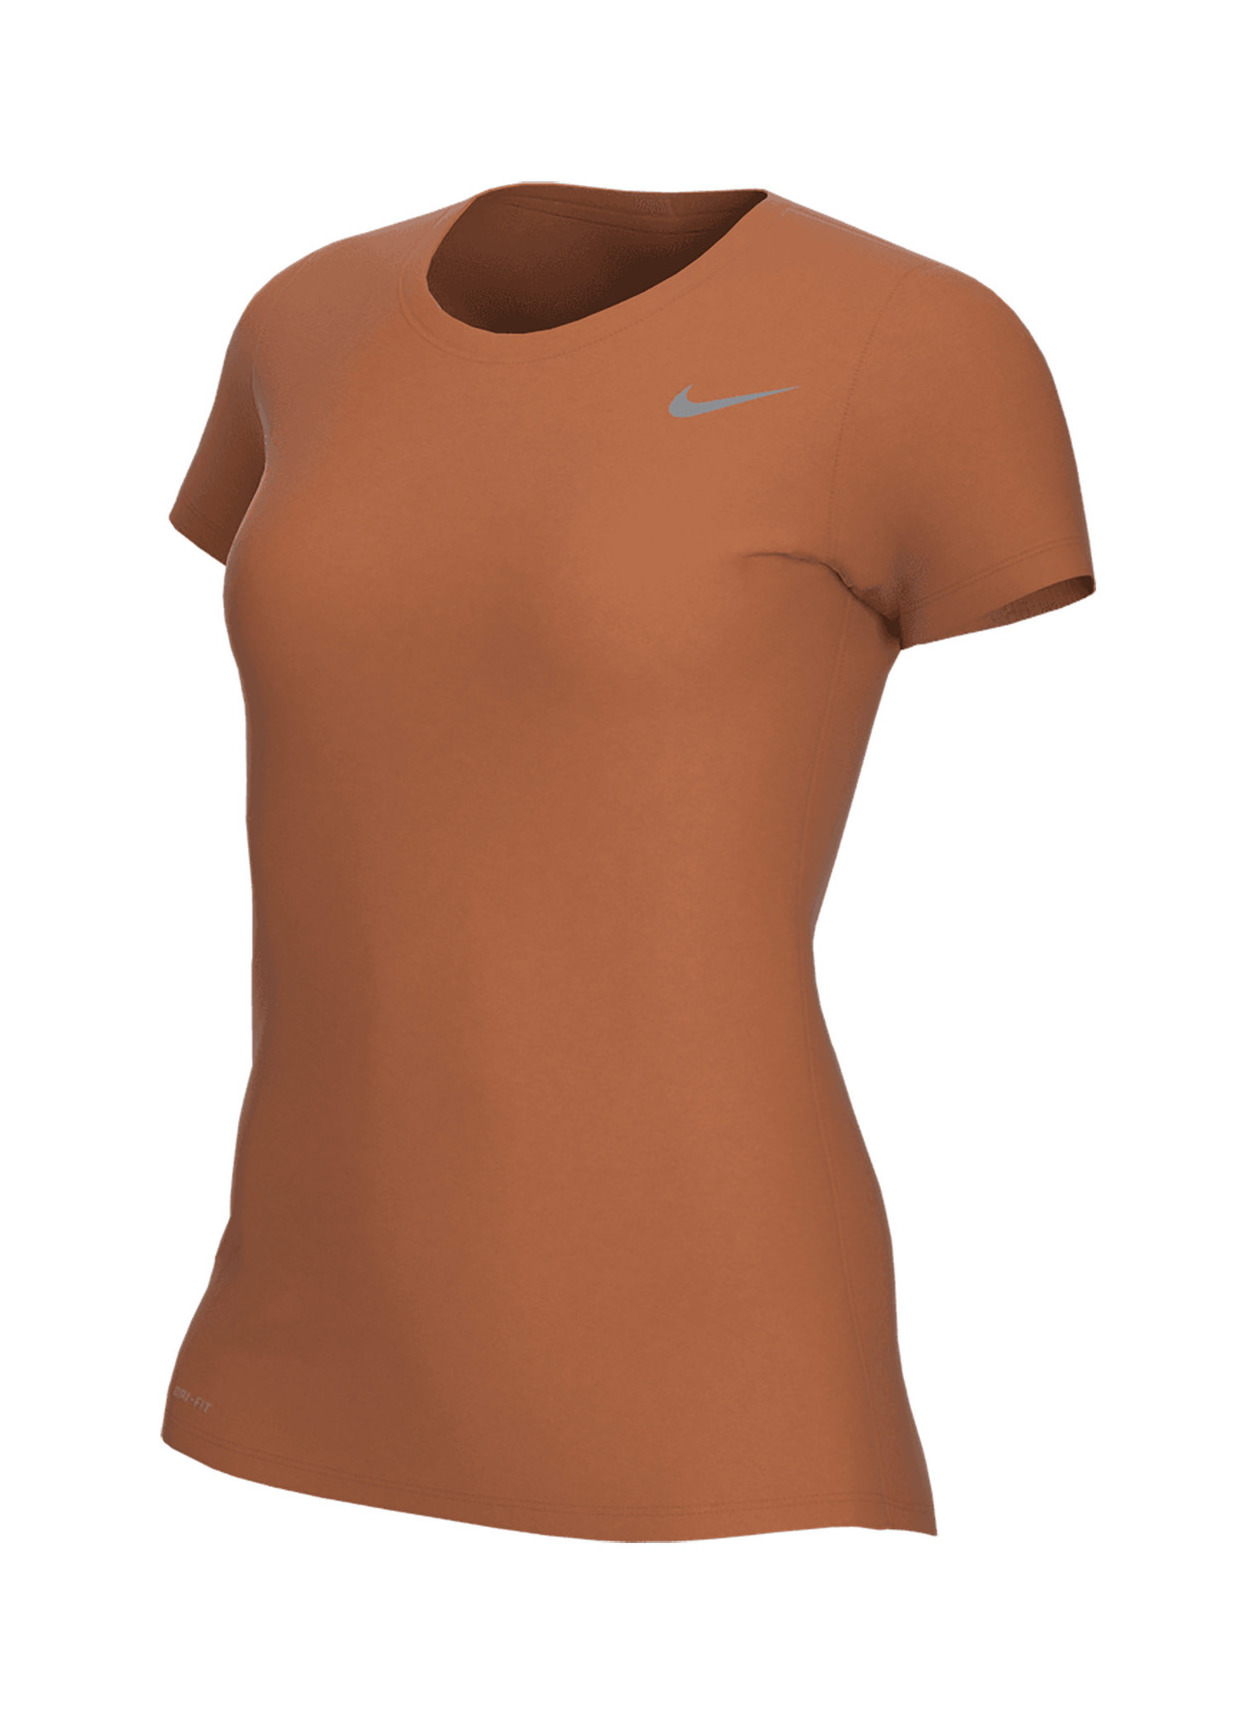 Nike Women's Desert Orange Legend Training T-Shirt